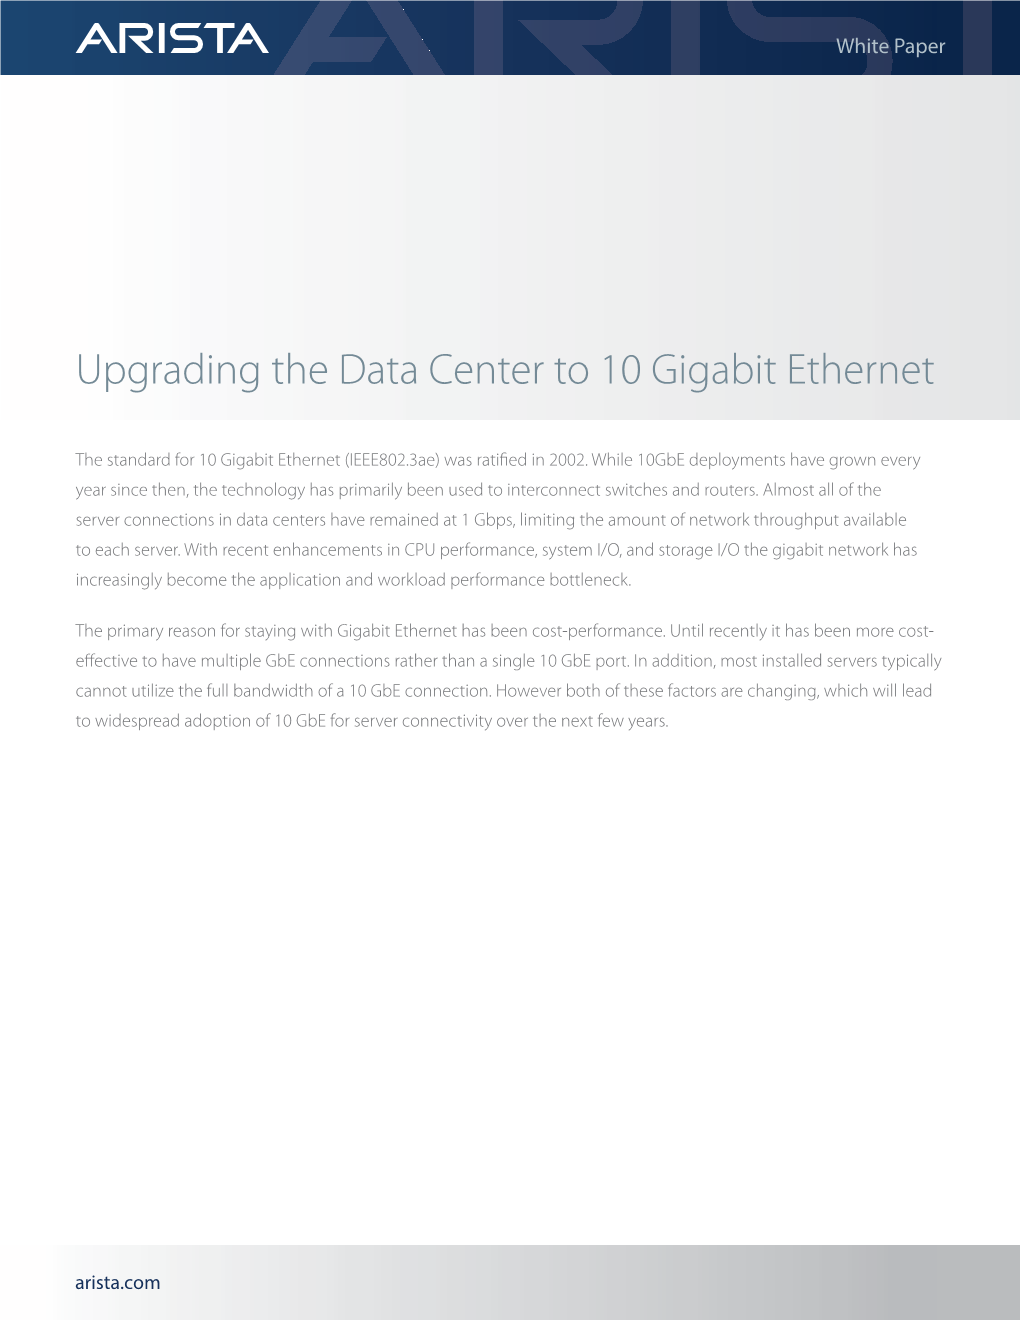 Upgrading the Data Center to 10 Gigabit Ethernet